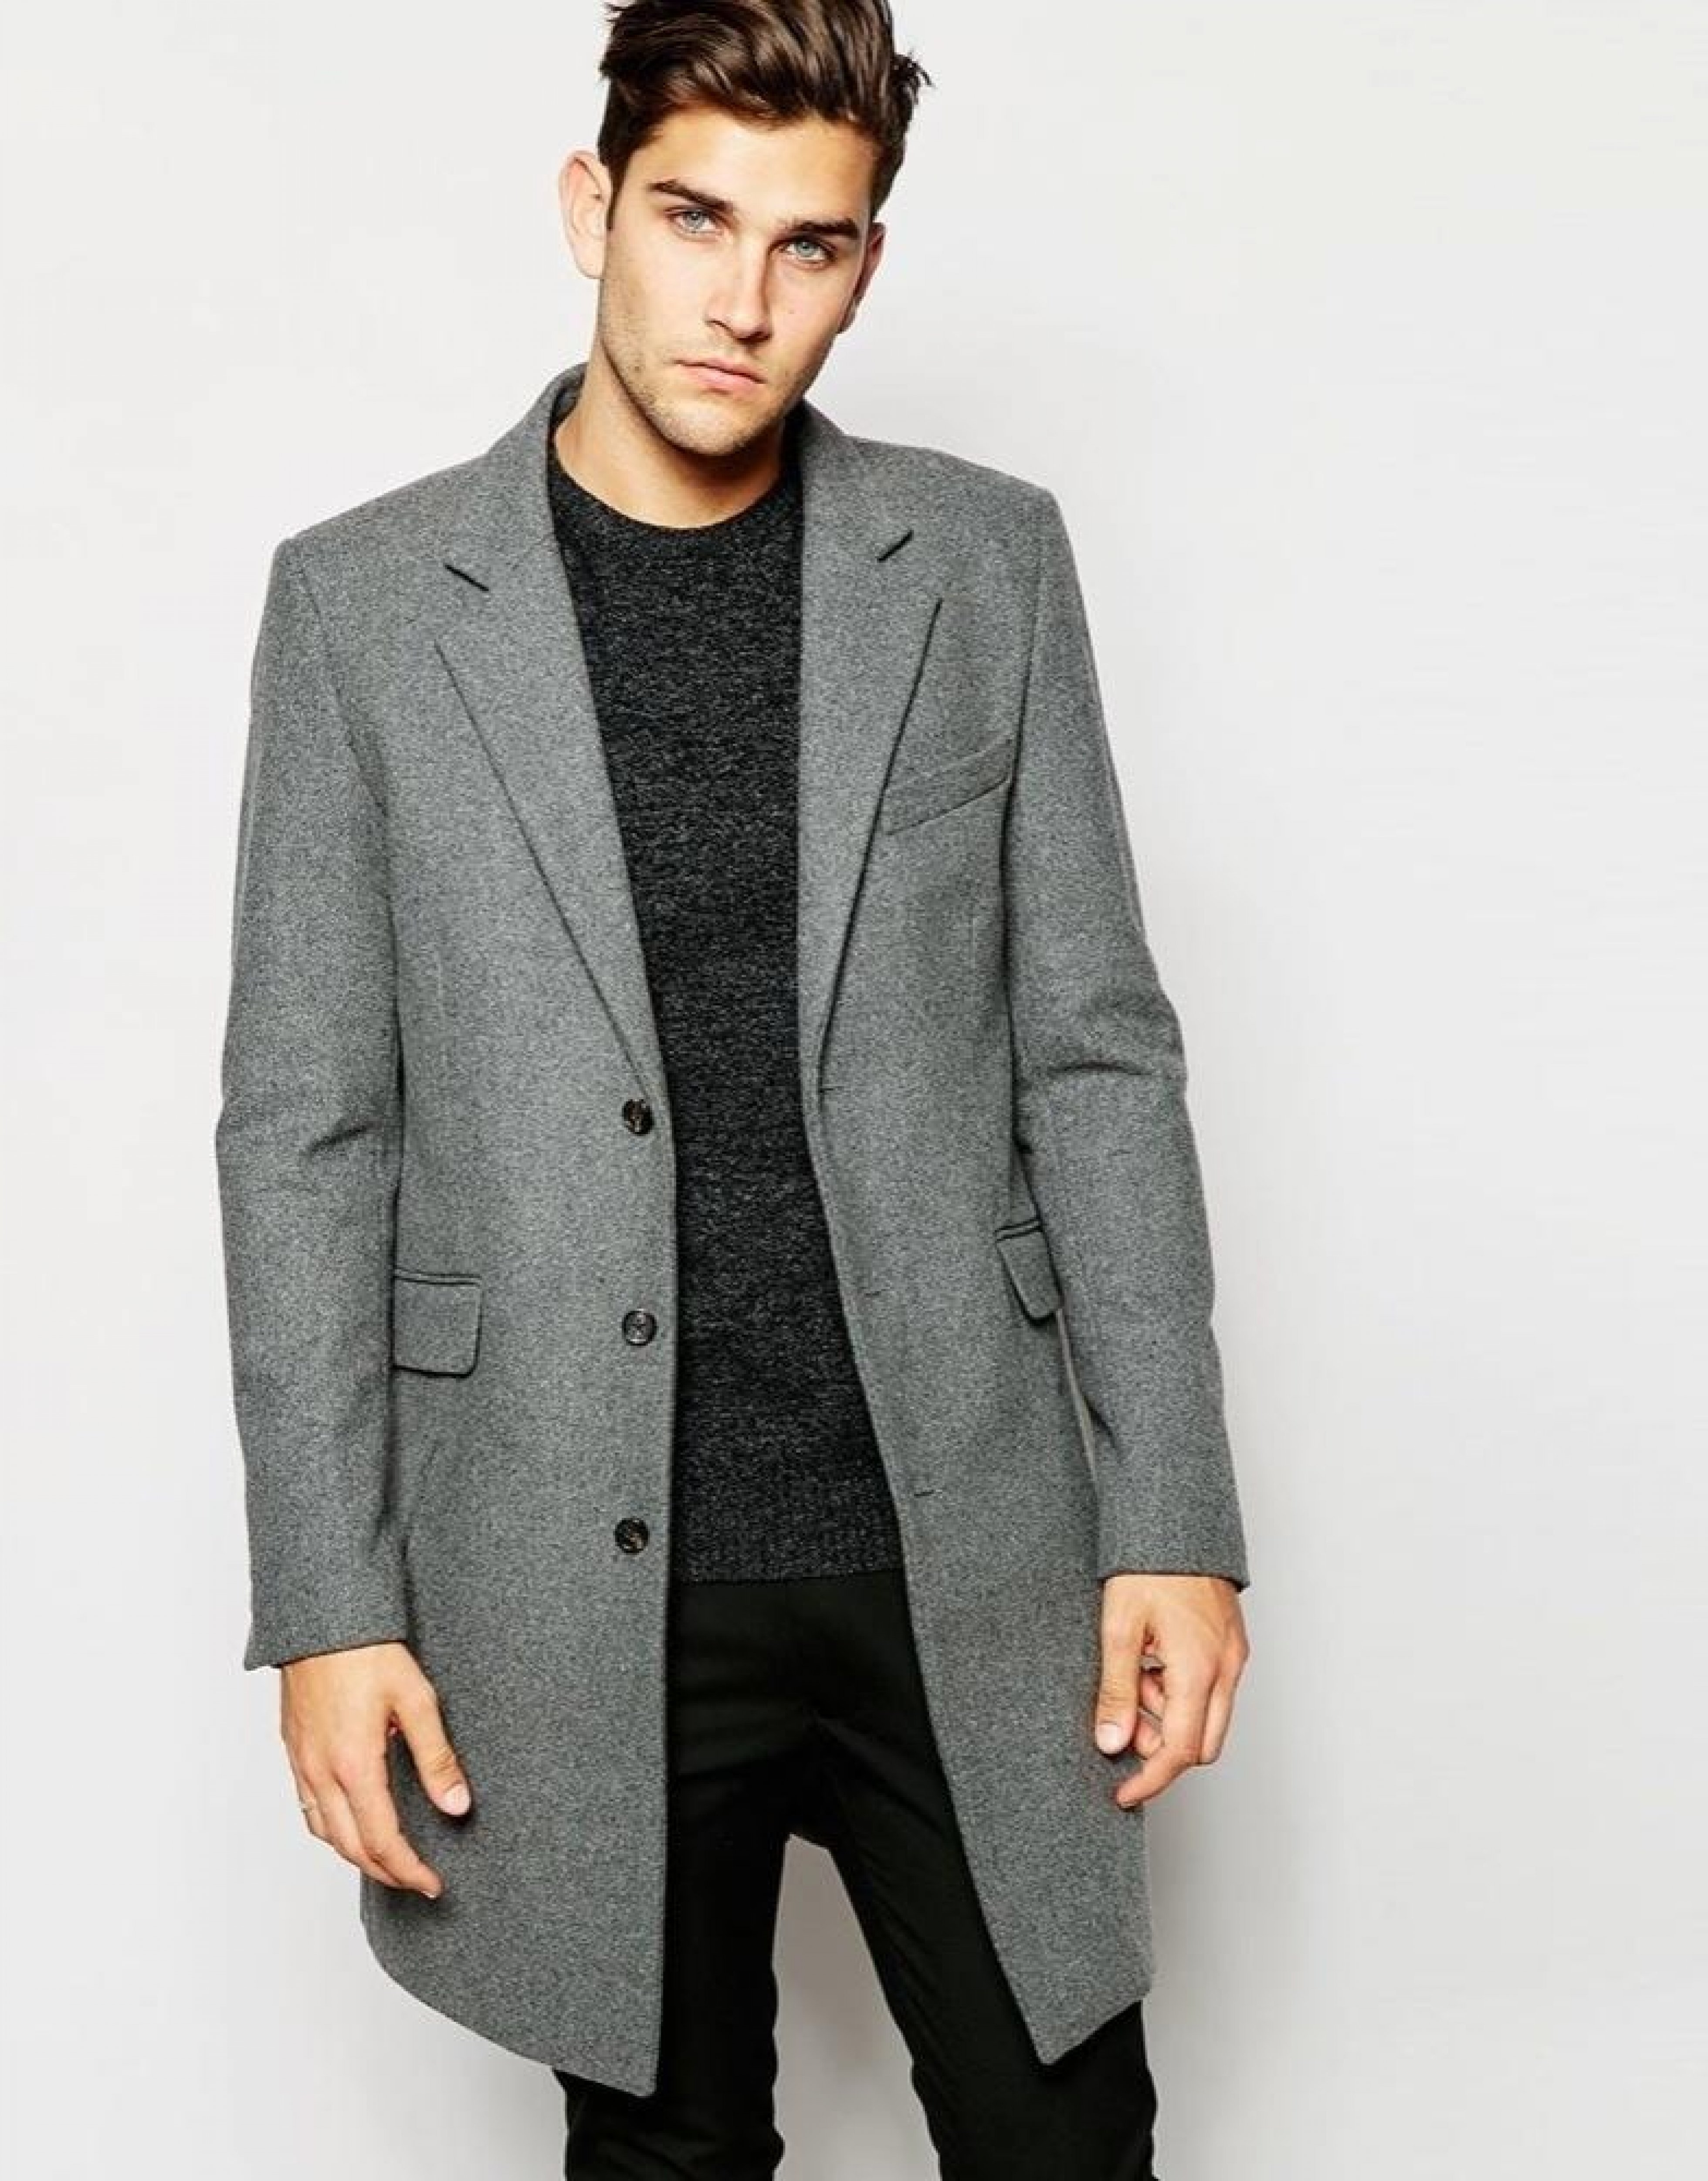 Низкое мужское пальто. Мужское пальто woolen Coat. Wool Blend Coat пальто мужское\. Пальто Bershka мужское серое. Пальто Асос мужское серое.